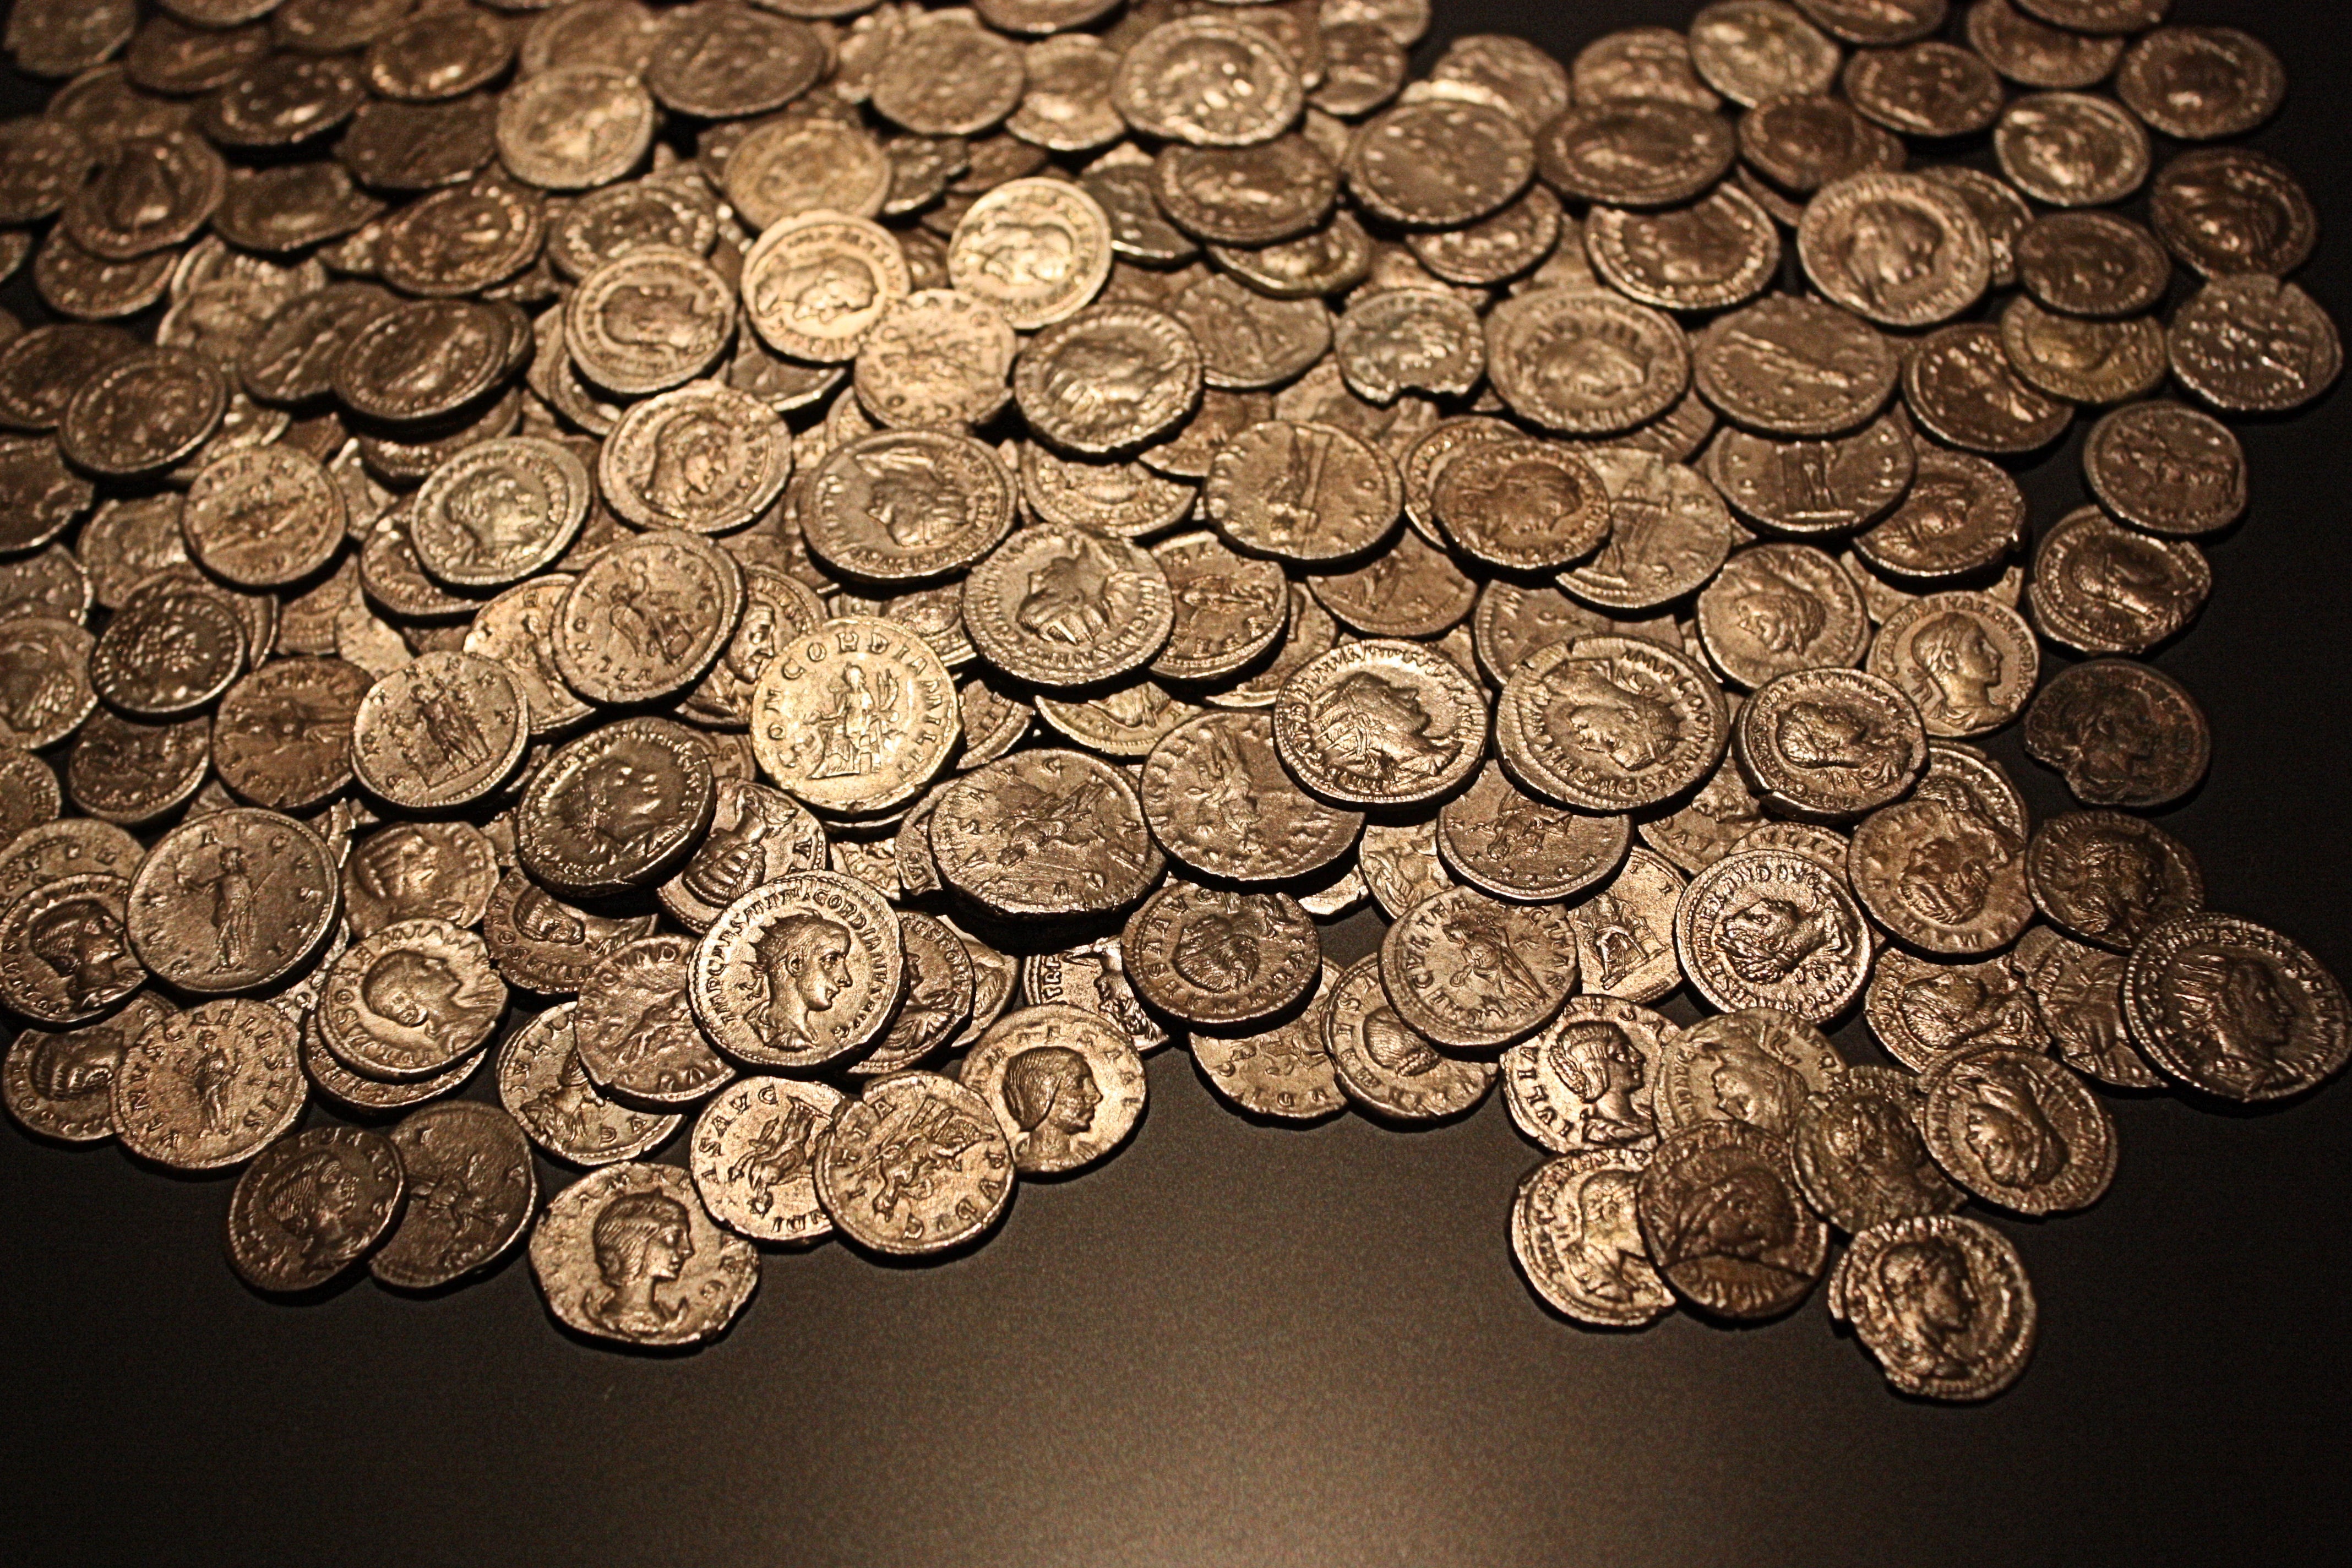 En hög med gamla romerska mynt.